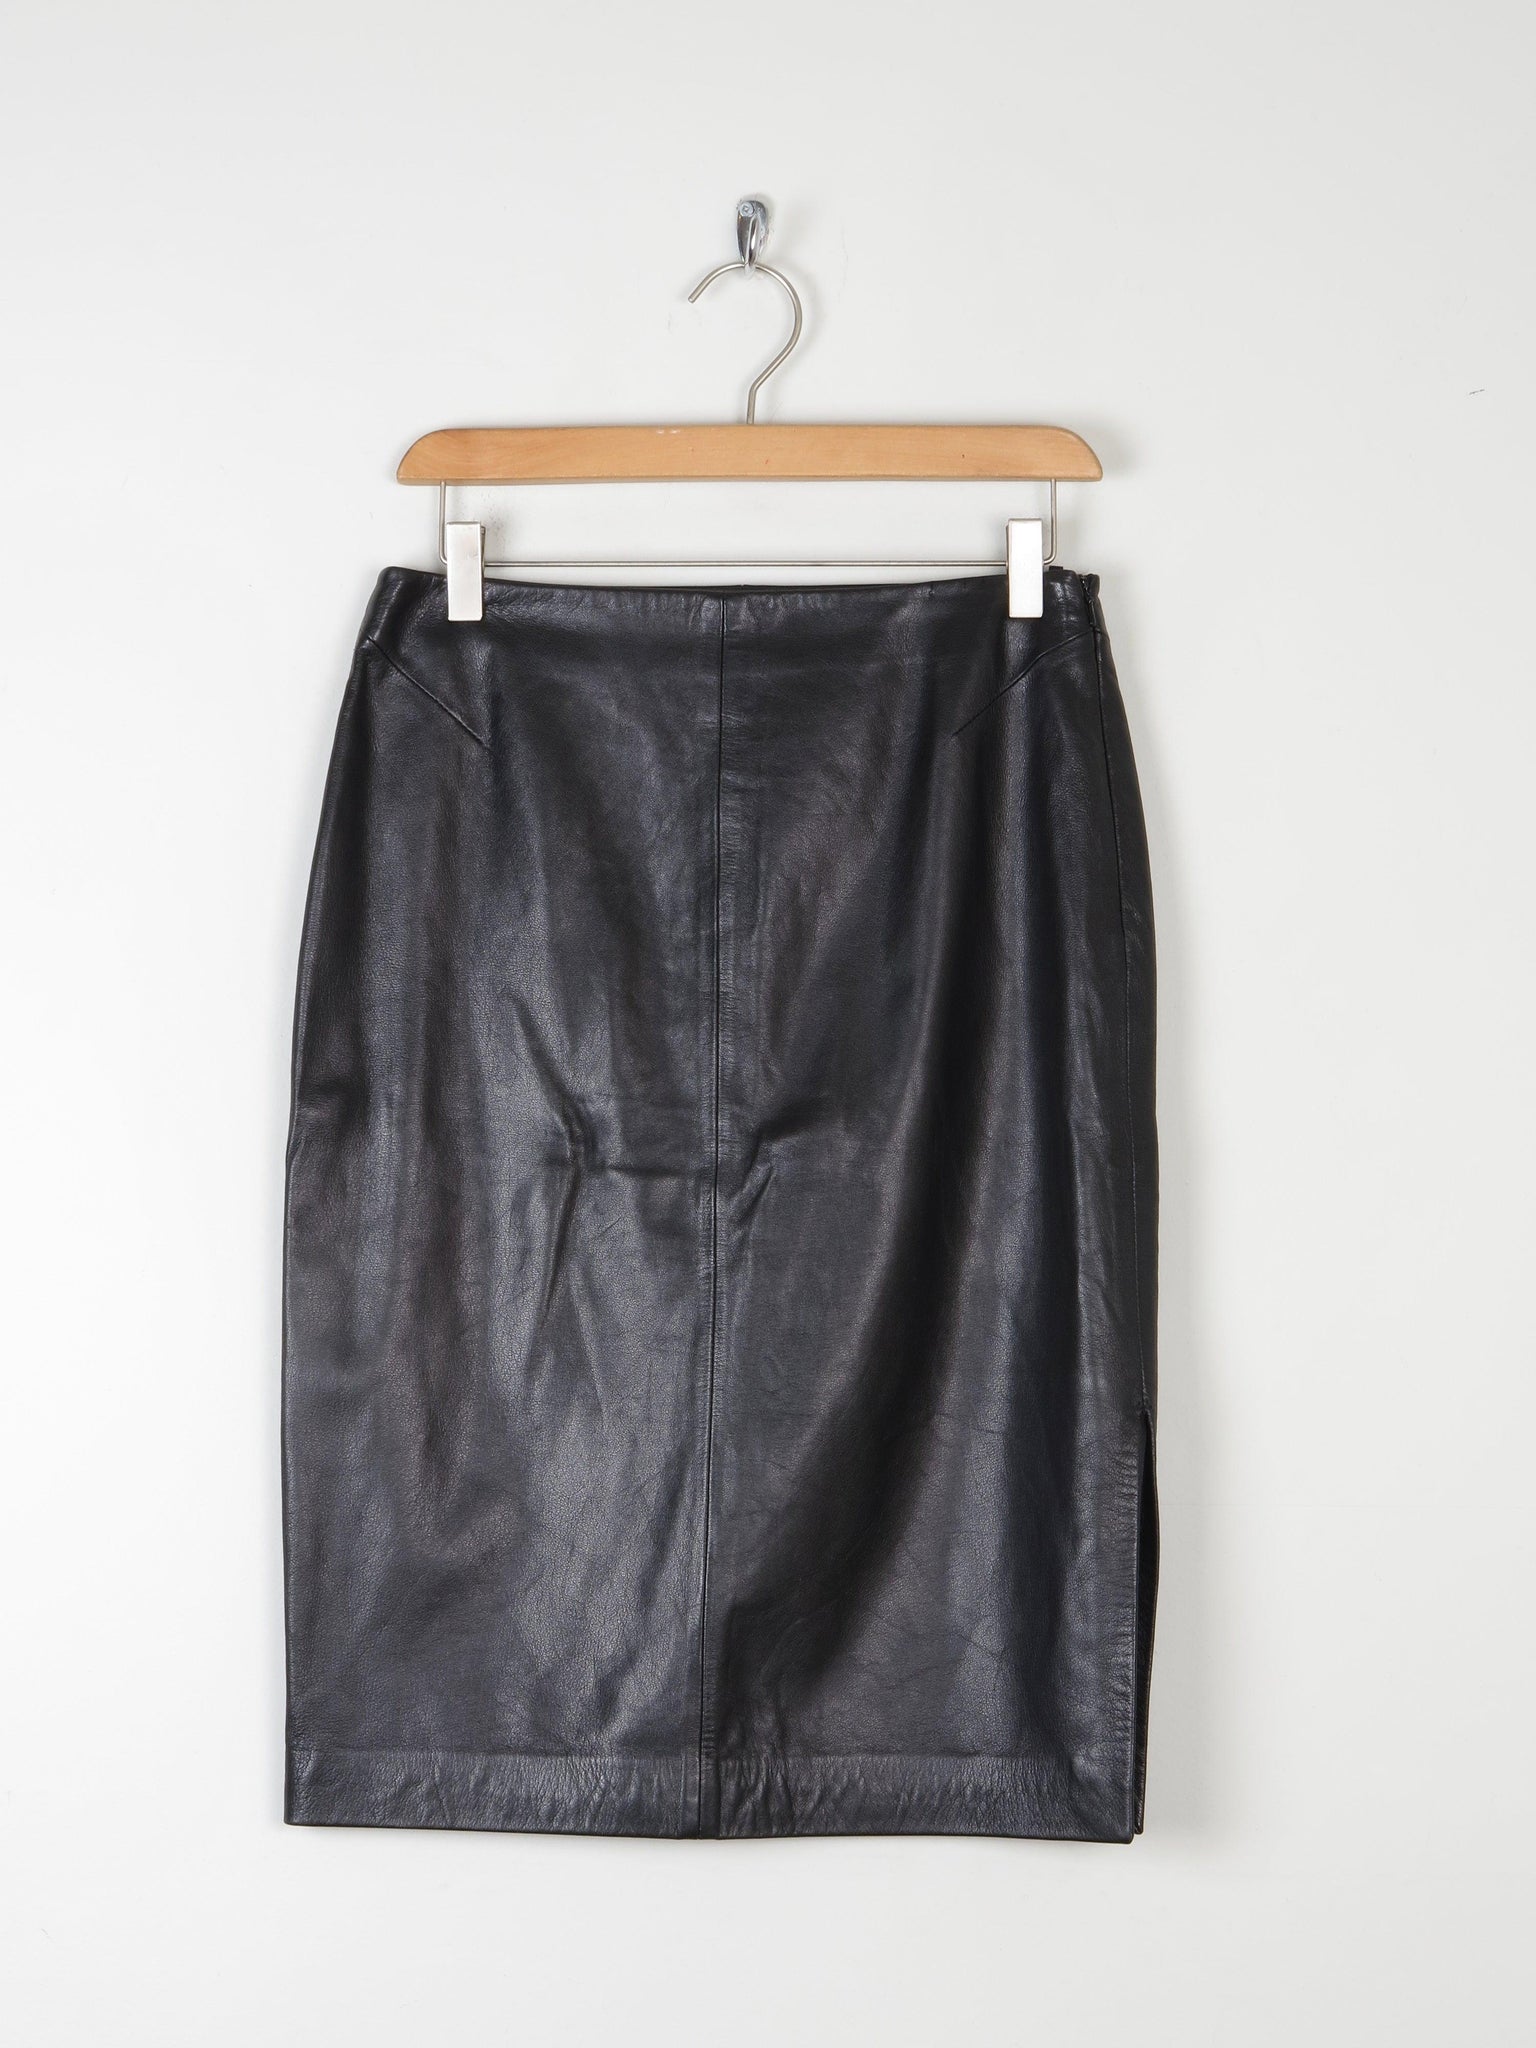 Black Leather Vintage Pencil Skirt 8/10 28" - The Harlequin